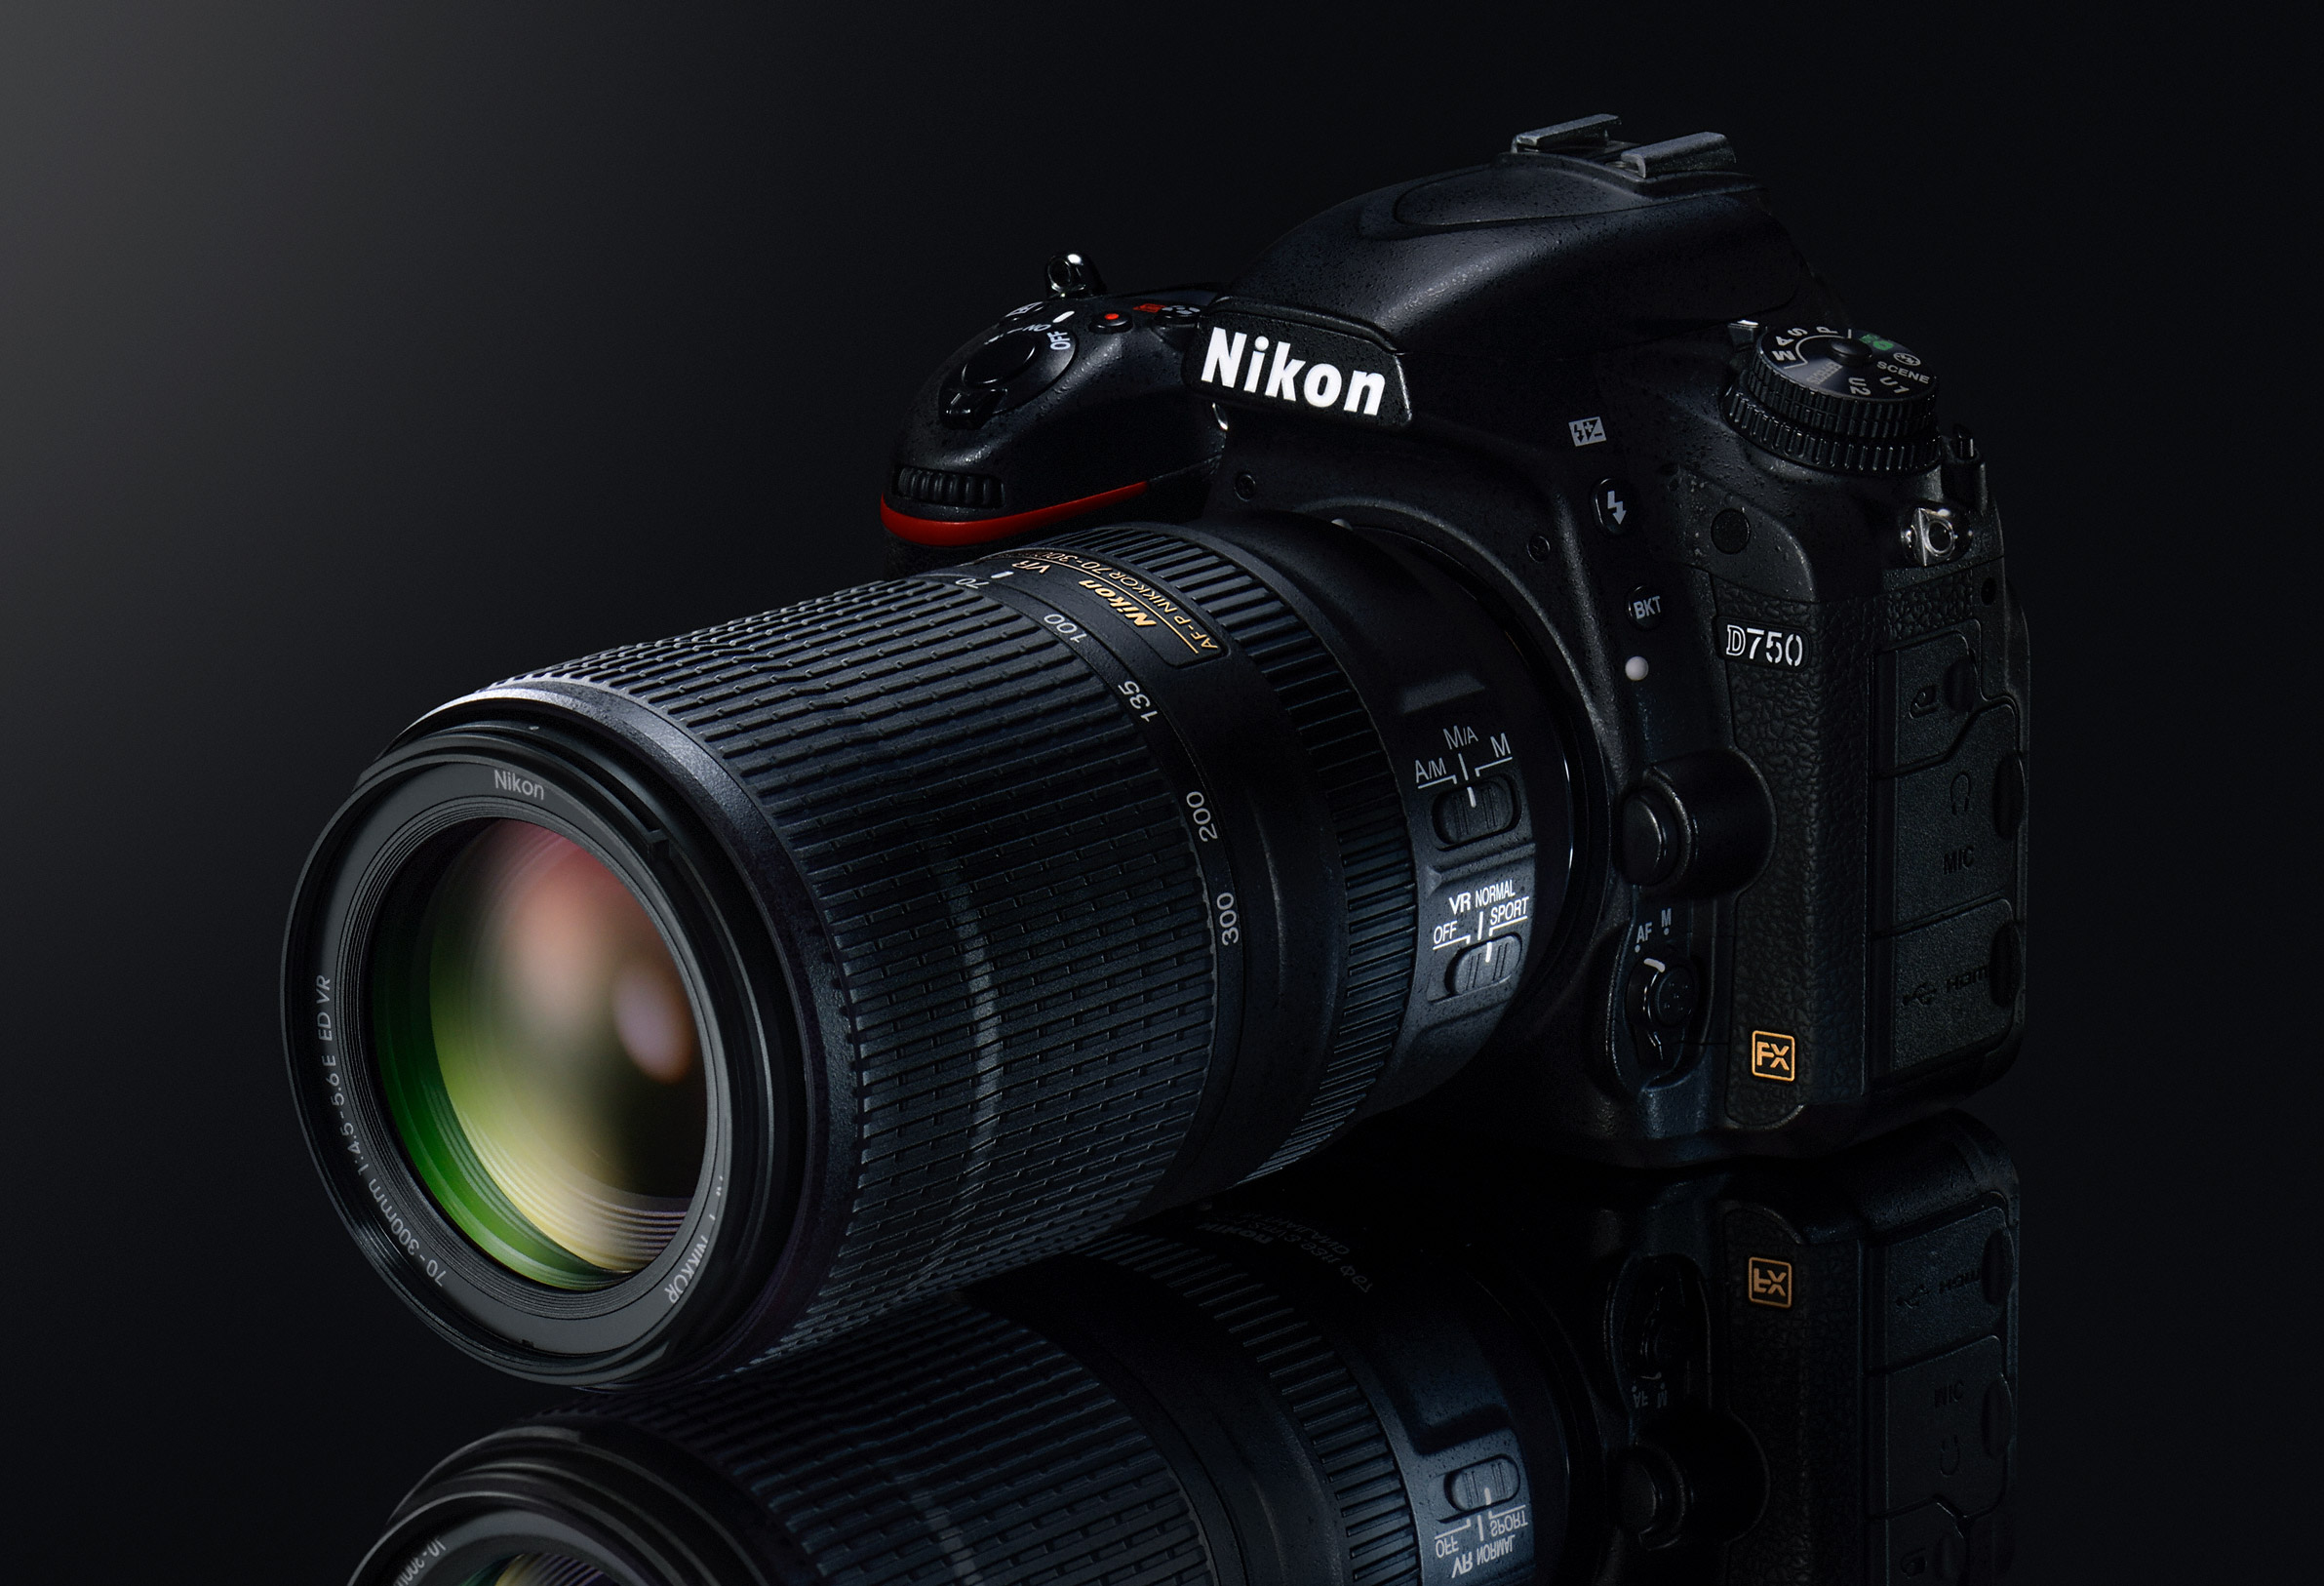 Nikon AF-P 70-300mm f/4.5-5.6 E ED VR